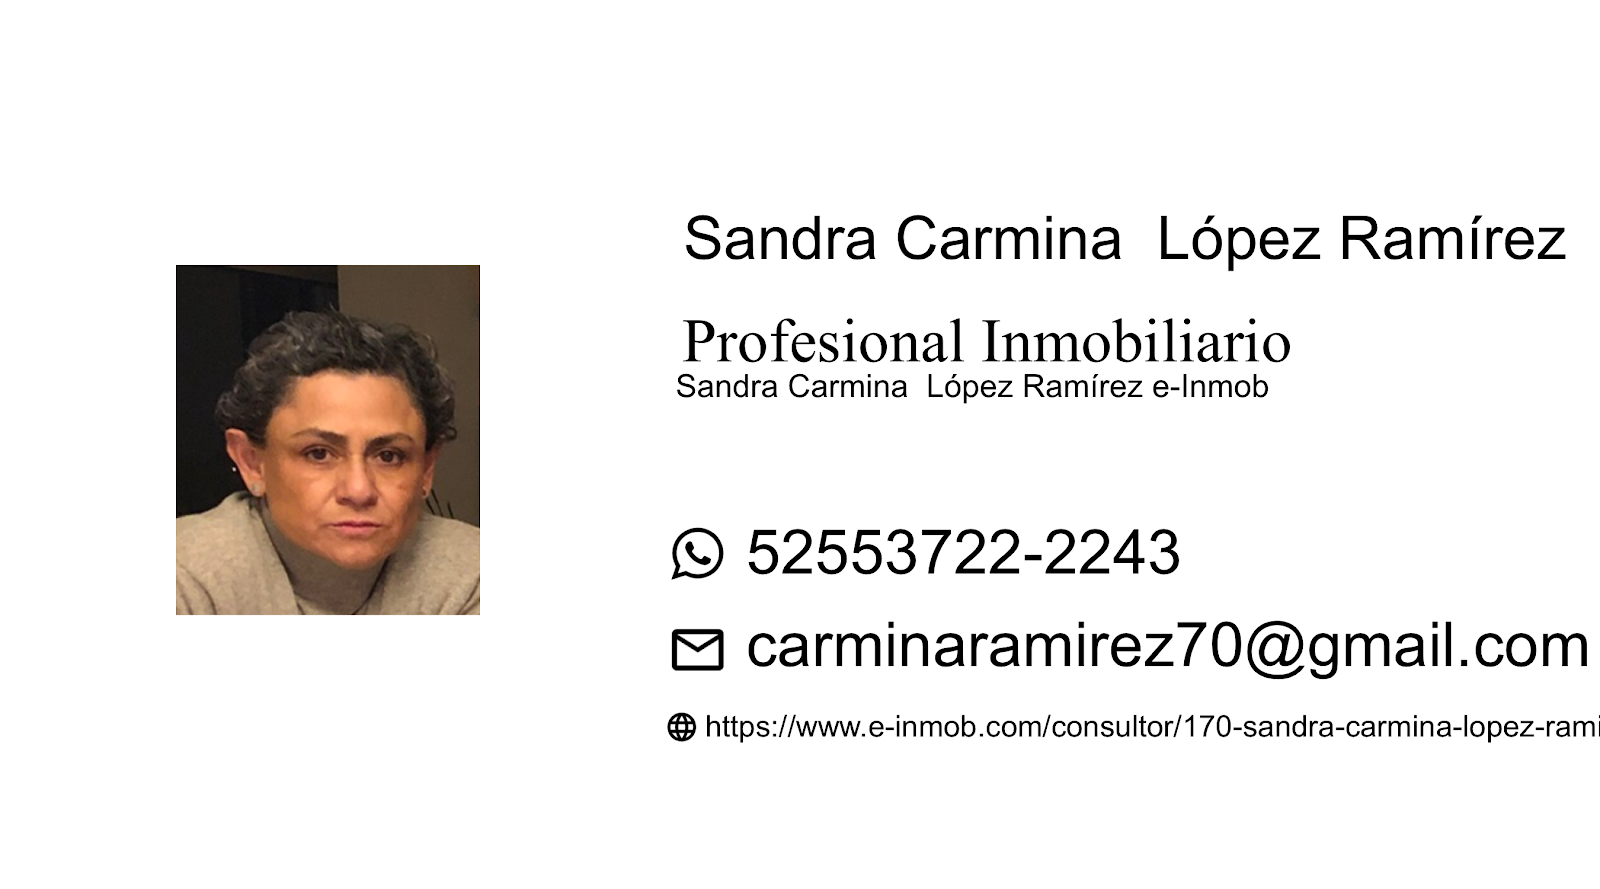 Firgum of Sandra Carmina  López Ramírez